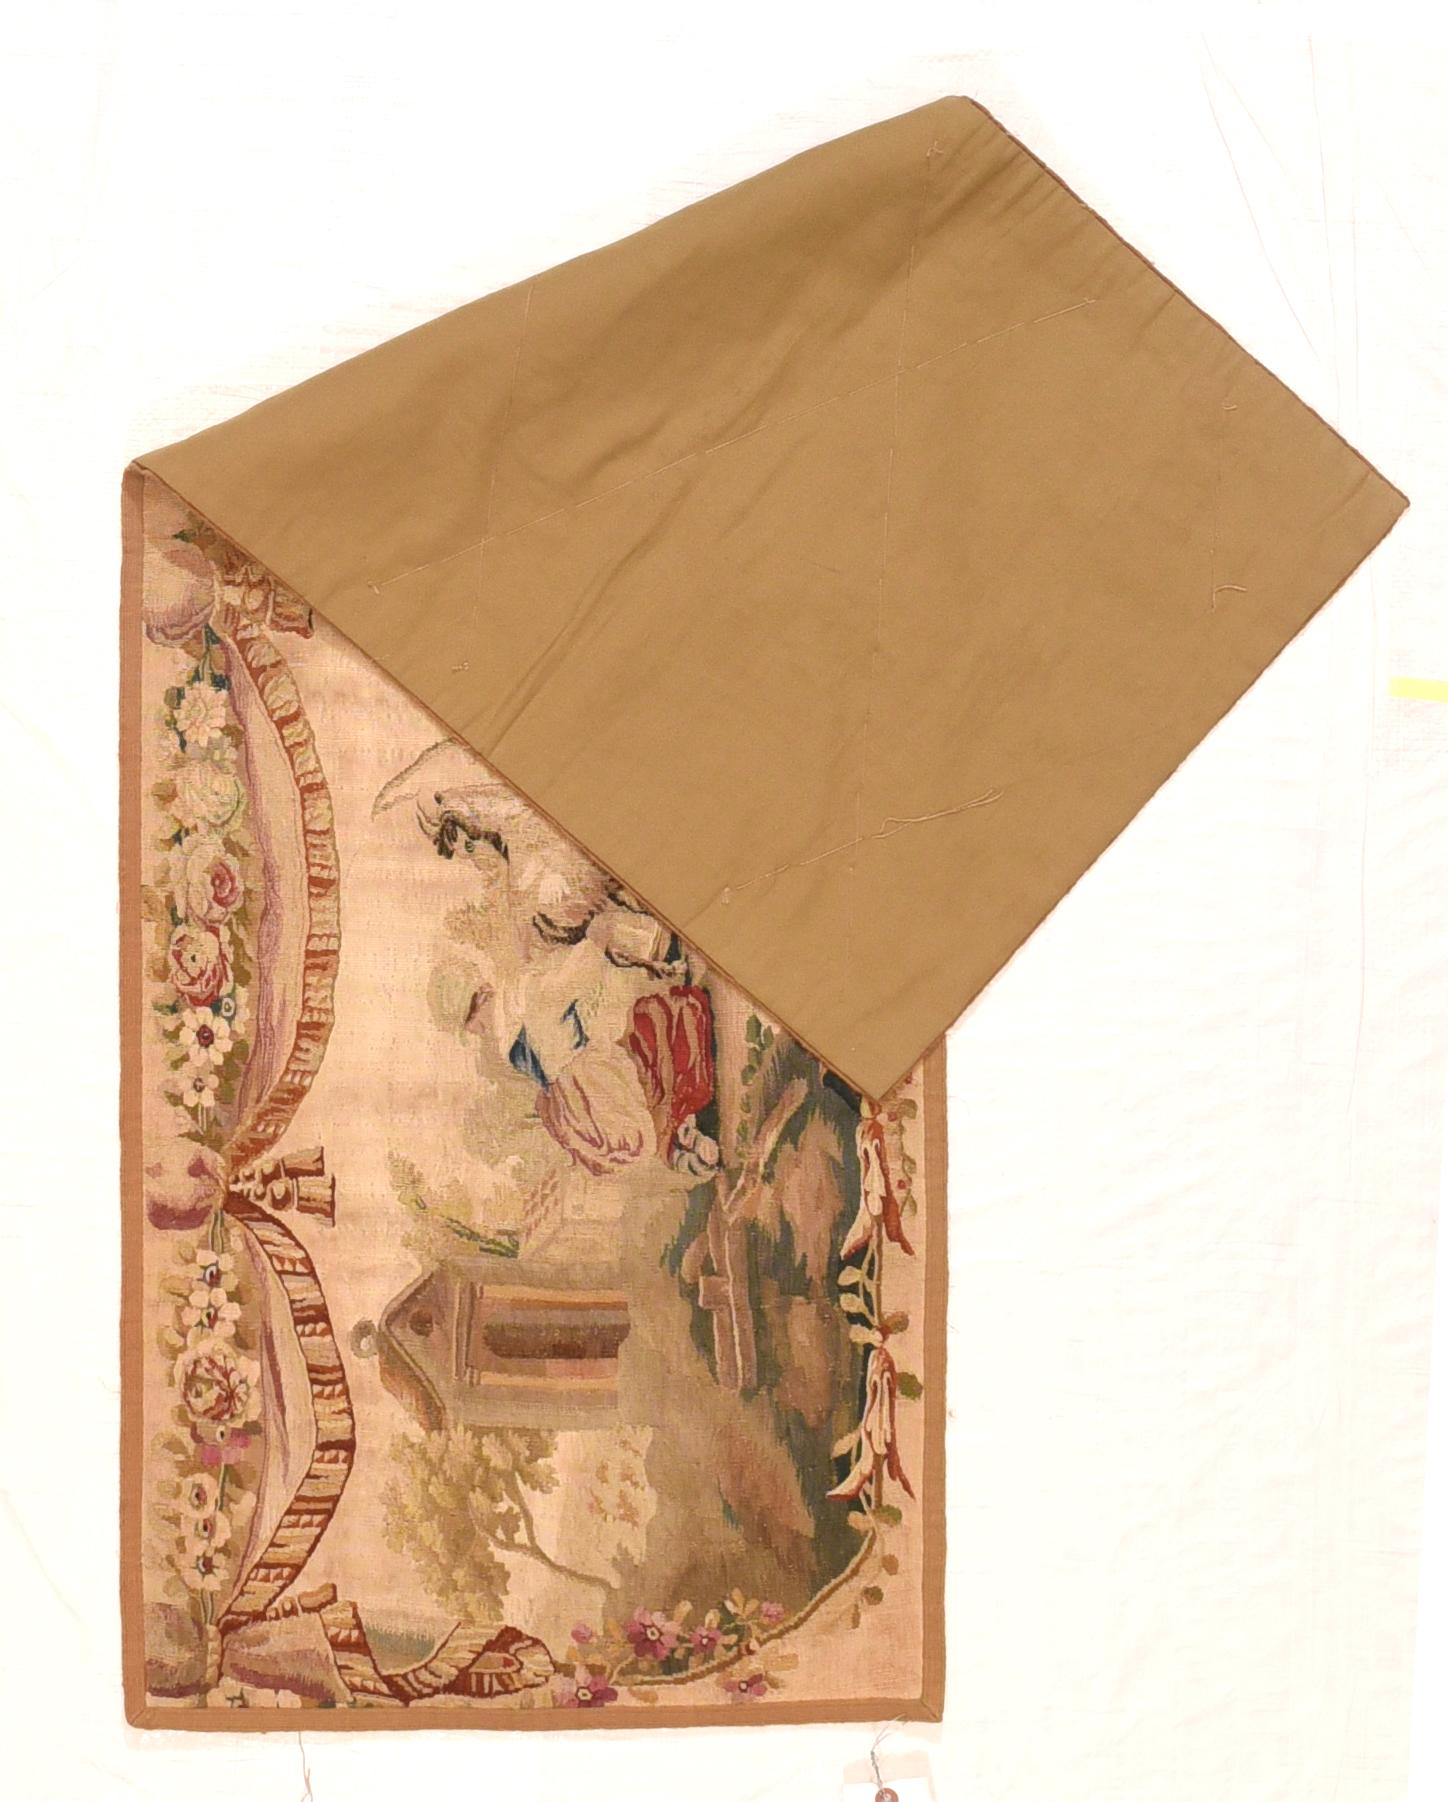 La manufacture de tapisserie d'Aubusson des XVIIe et XVIIIe siècles a réussi à concurrencer la manufacture royale de tapisserie des Gobelins et la position privilégiée de la tapisserie de Beauvais. La fabrication de tapisseries à Aubusson, dans la